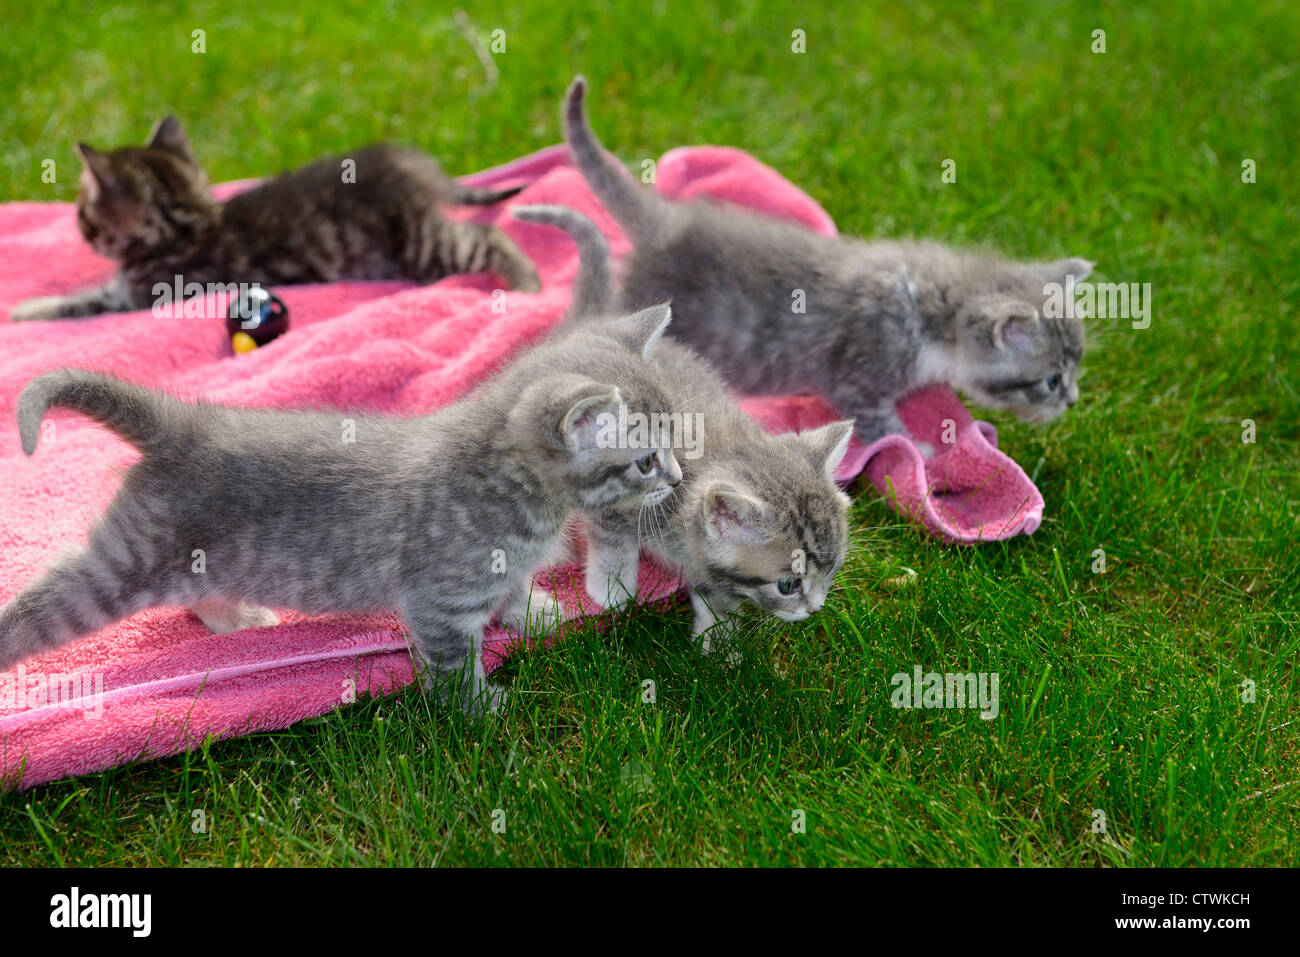 Carino grigio tabby kitten compagni di cucciolata prima avventura all'aperto nervoso per il rafforzamento sul prato Foto Stock